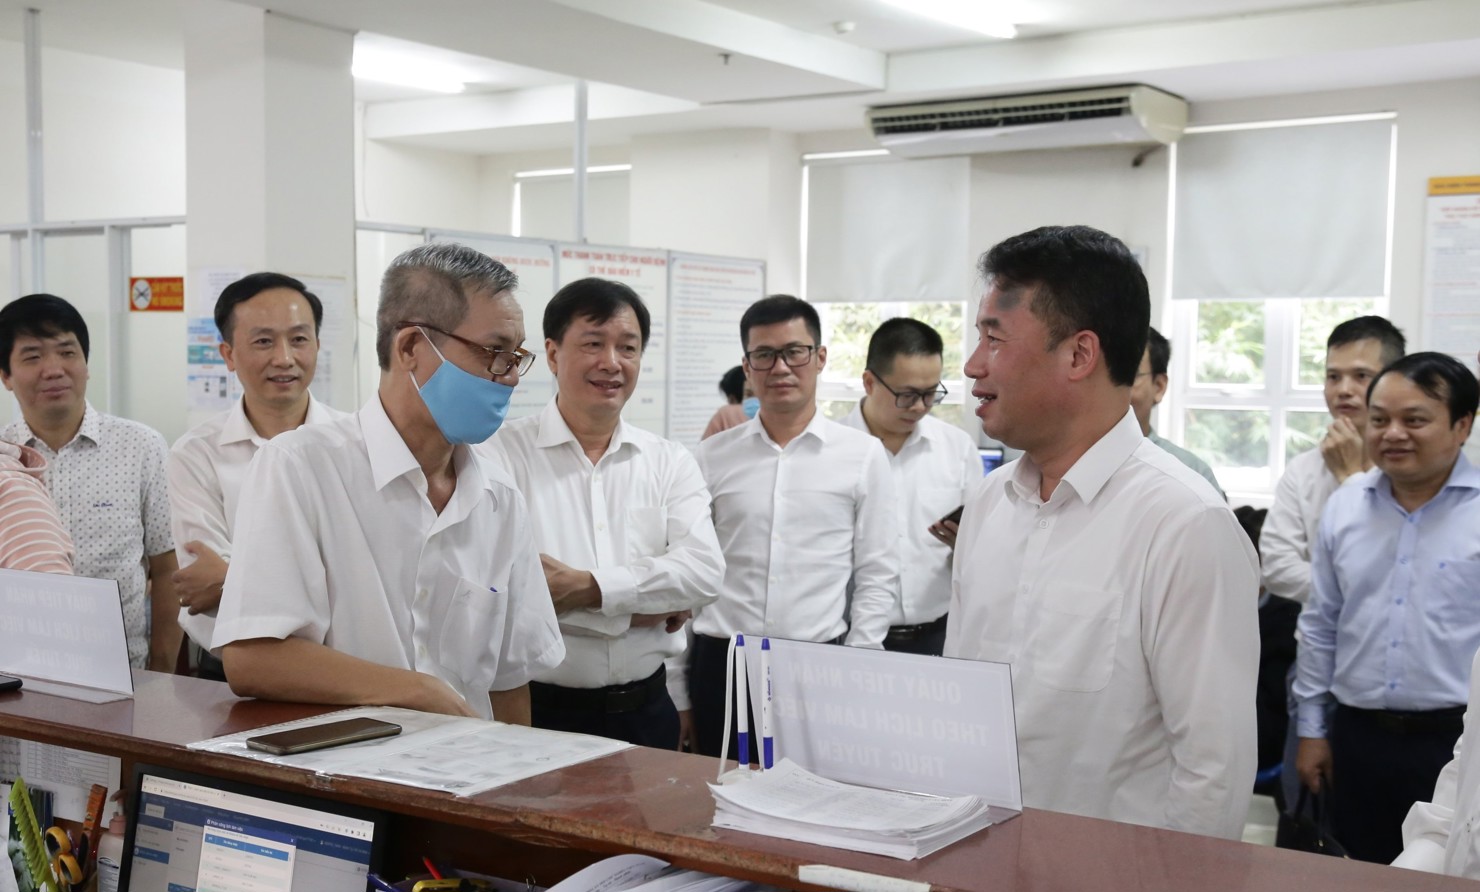 Lãnh đạo BHXH Việt Nam kiểm tra tính năng đặt lịch làm việc với cơ quan BHXH.